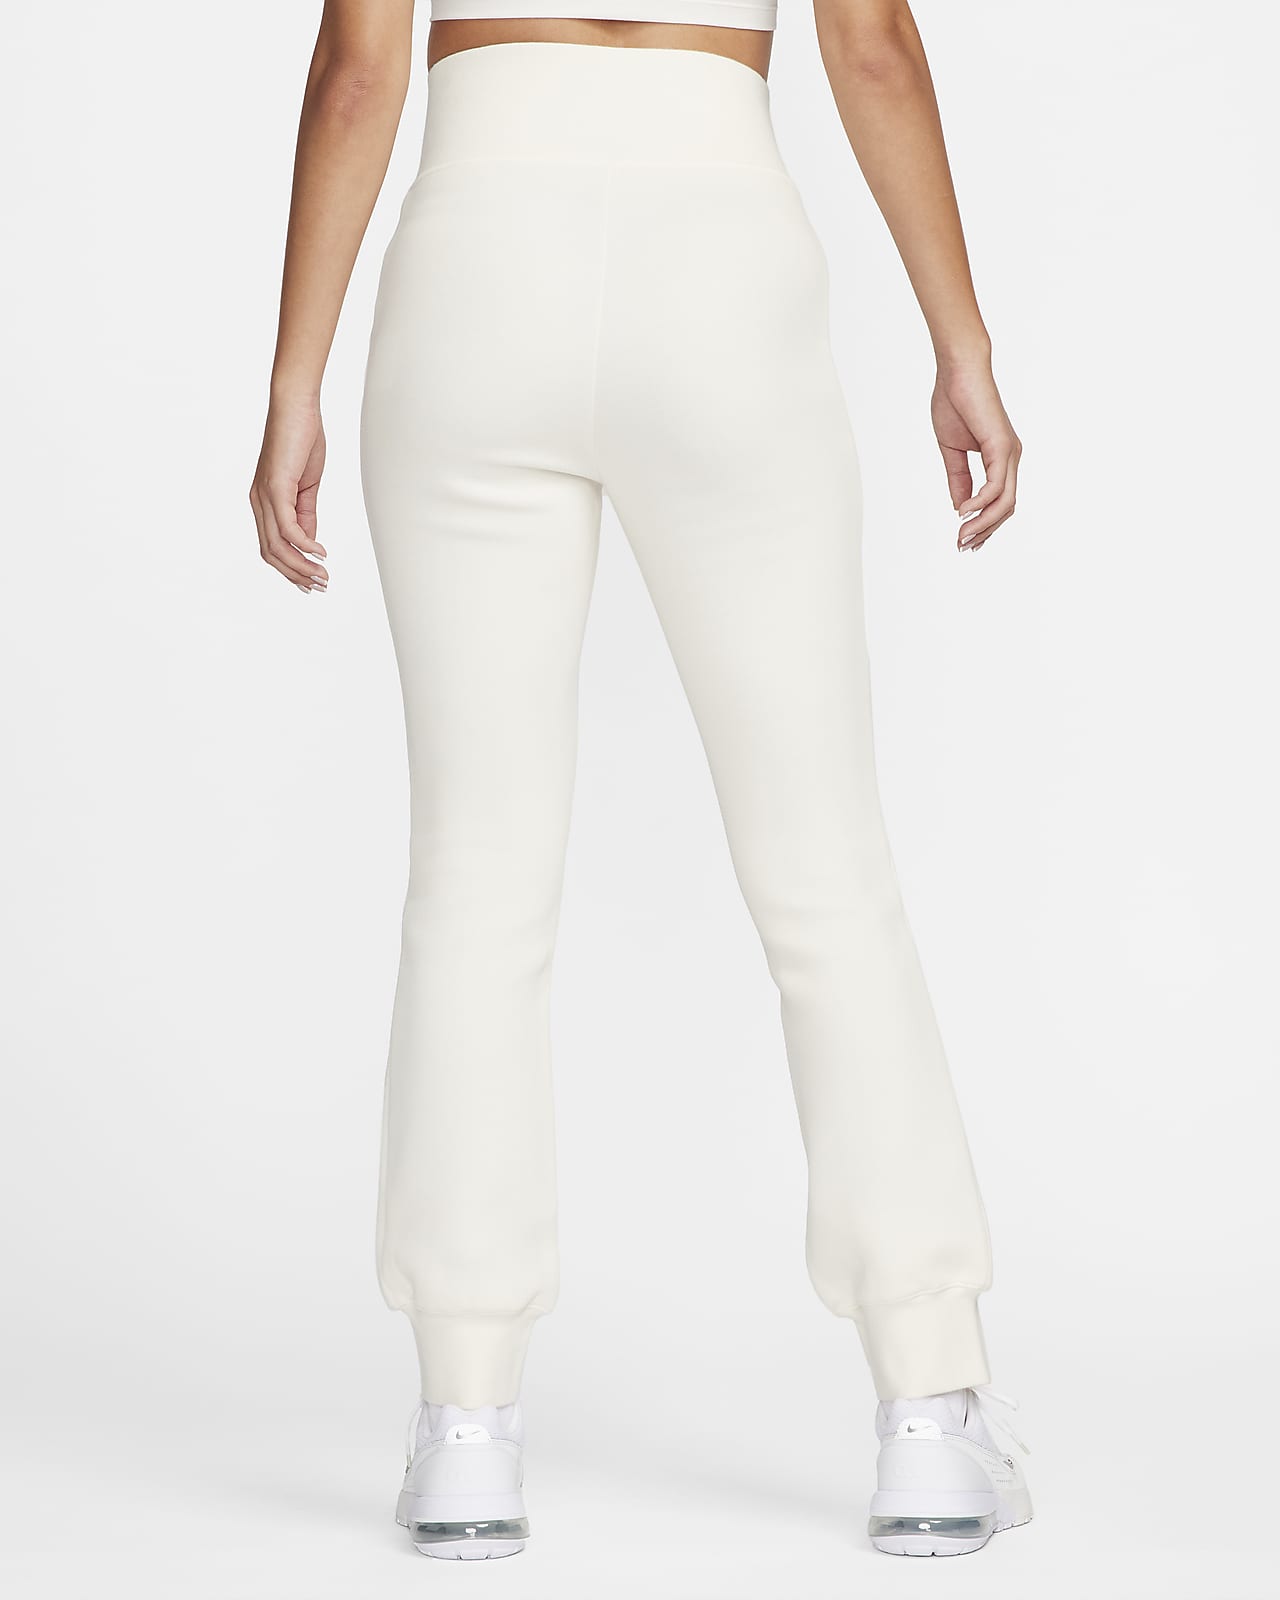 Nike Women's Sportswear Tech Fleece High-Rise Slim Zip Pants